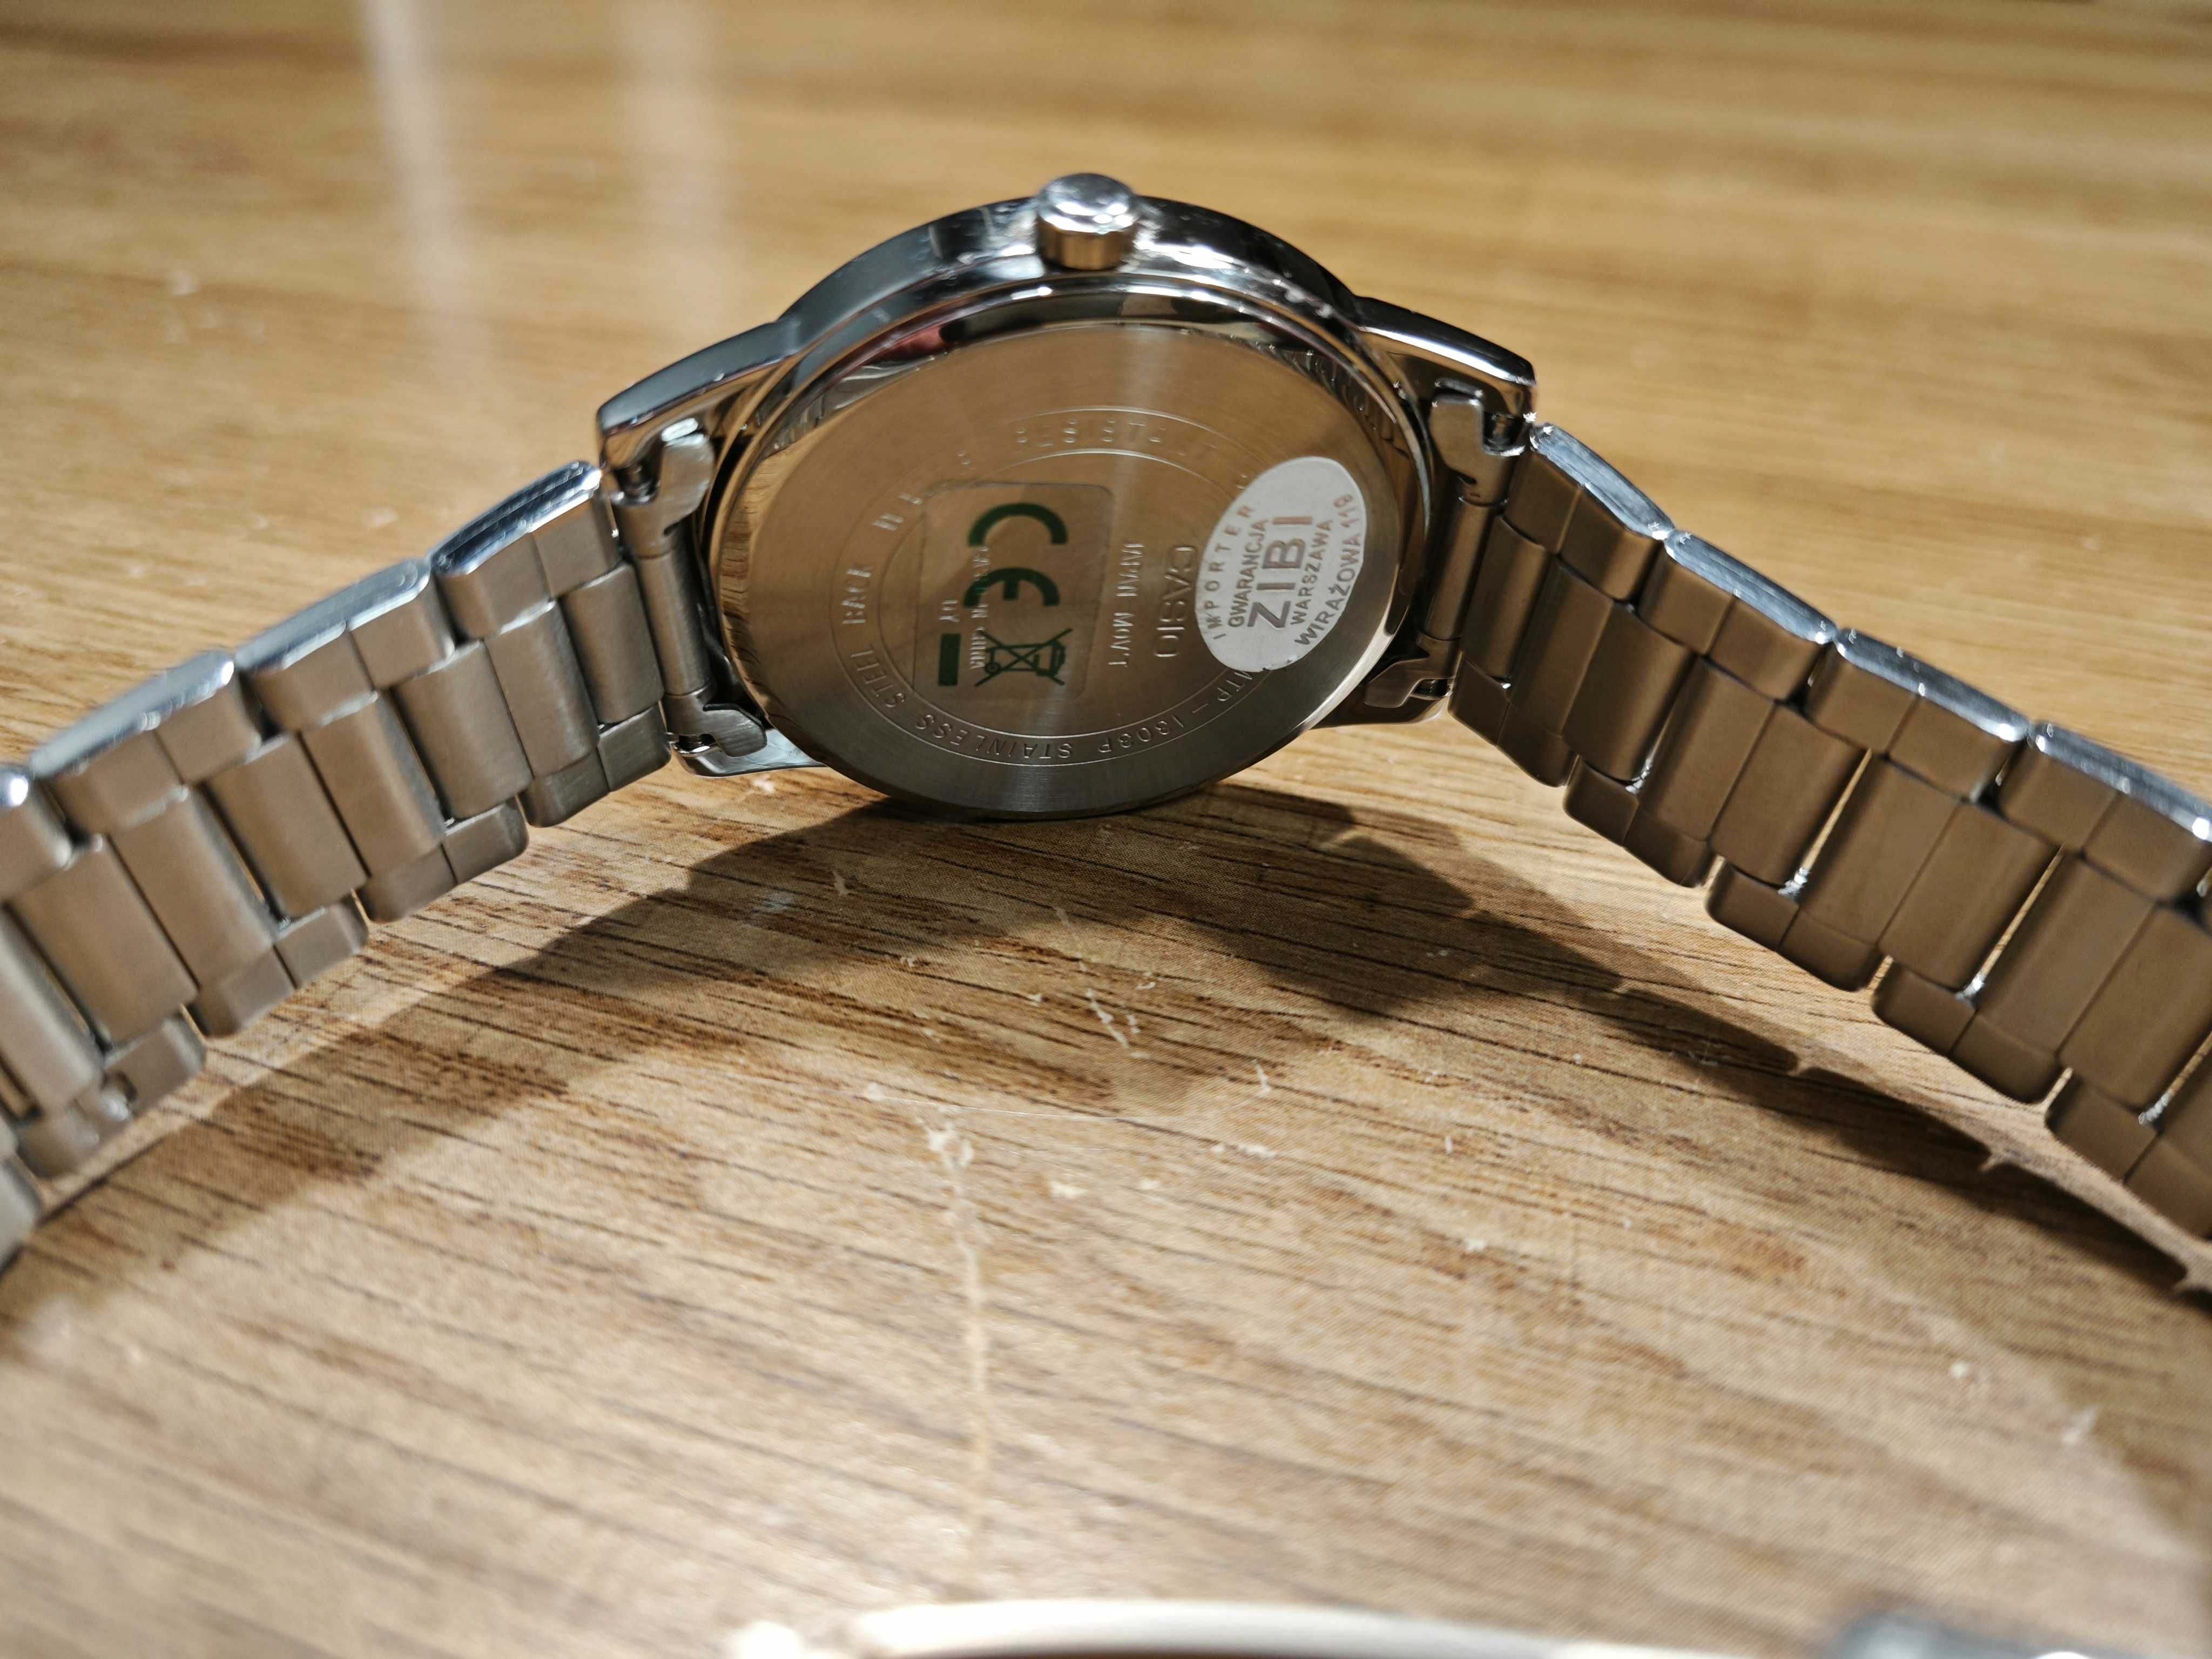 Nowy klasyczny zegarek męski Casio Collection MTP-1303D-7B